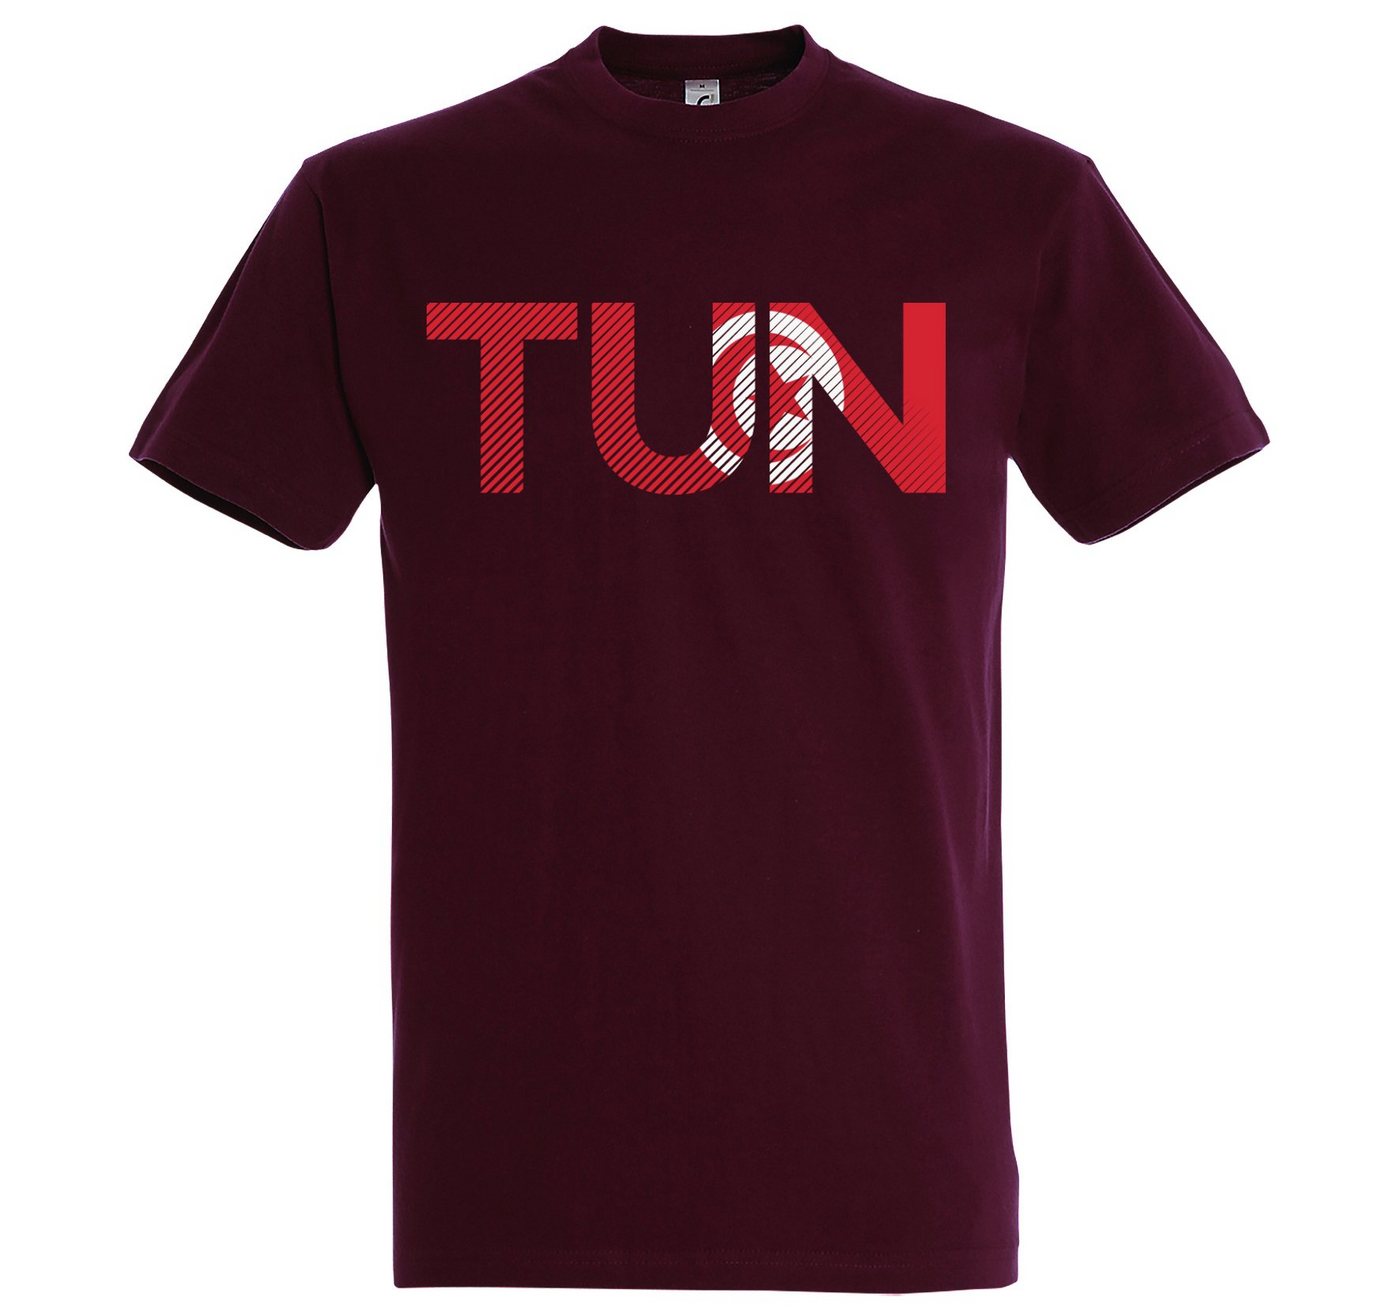 Youth Designz T-Shirt Tunesien Herren T-Shirt im Fußball Look mit TUN Frontprint von Youth Designz